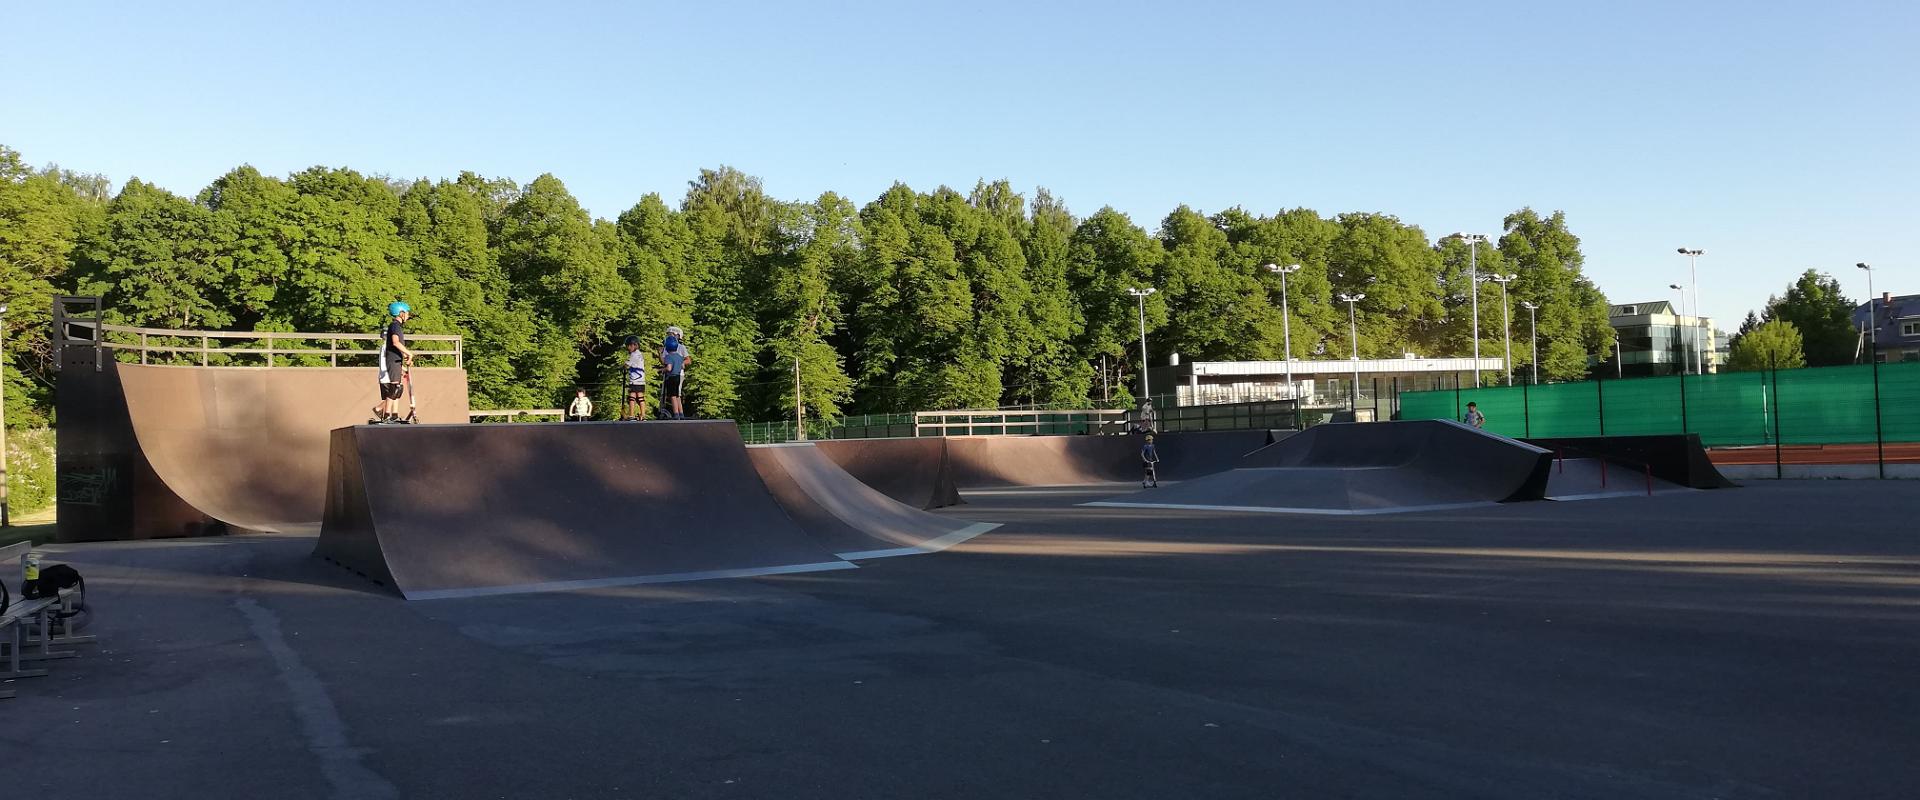 Tähtvere Skatepark